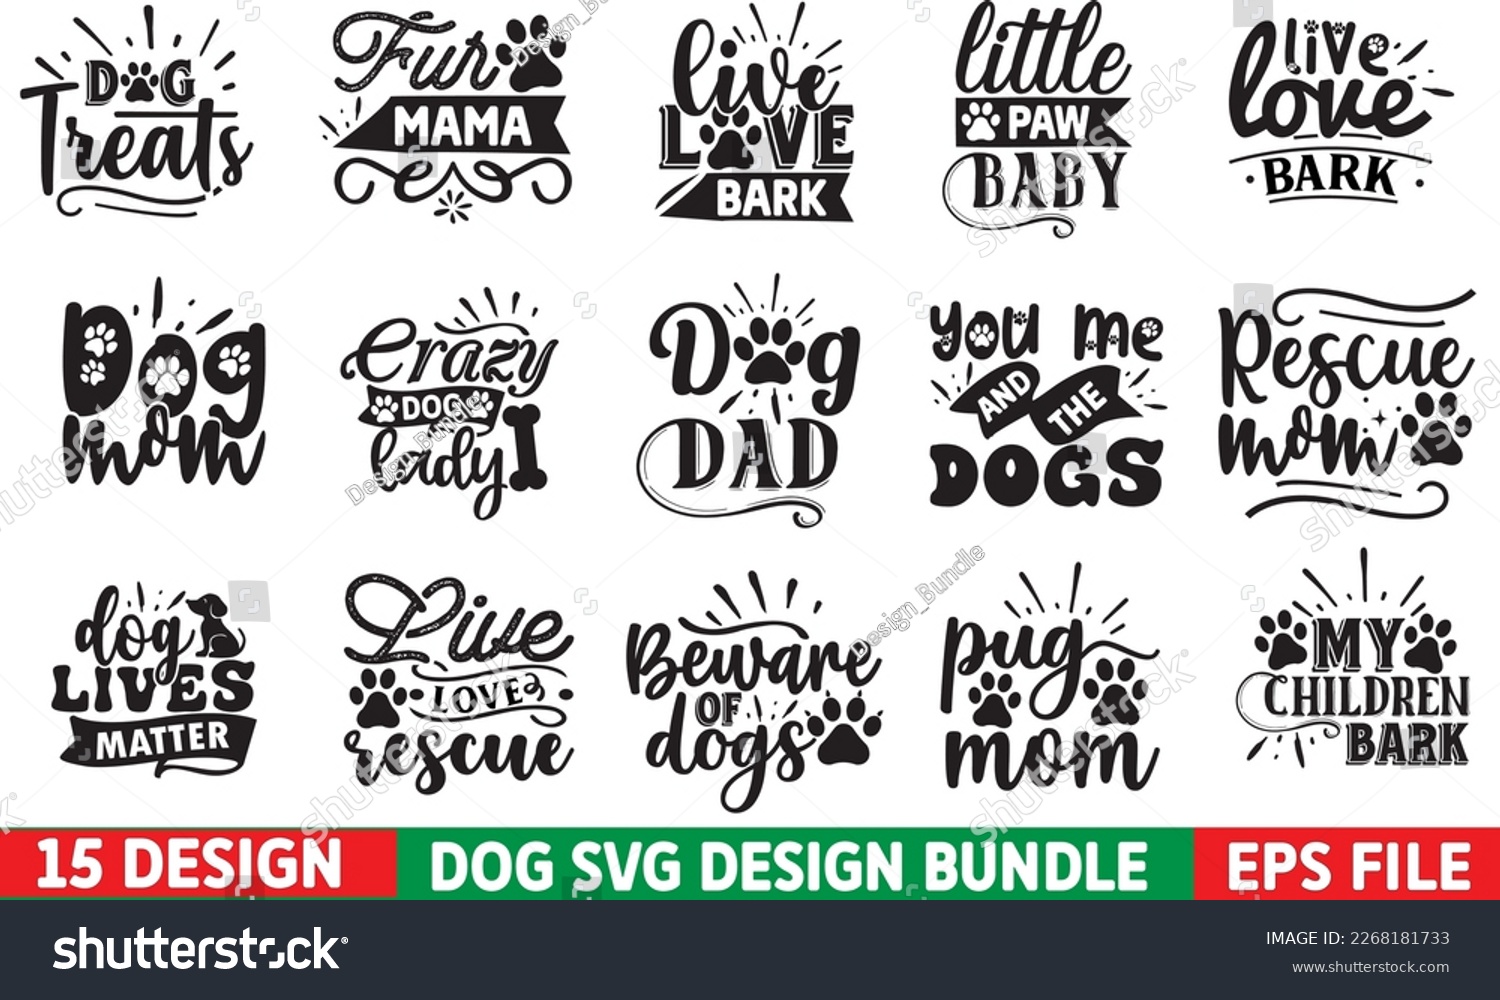 SVG of funny dog svg bundle, dog svg design, dog bundle, dog design, animal svg bundle, svg bundle
 svg